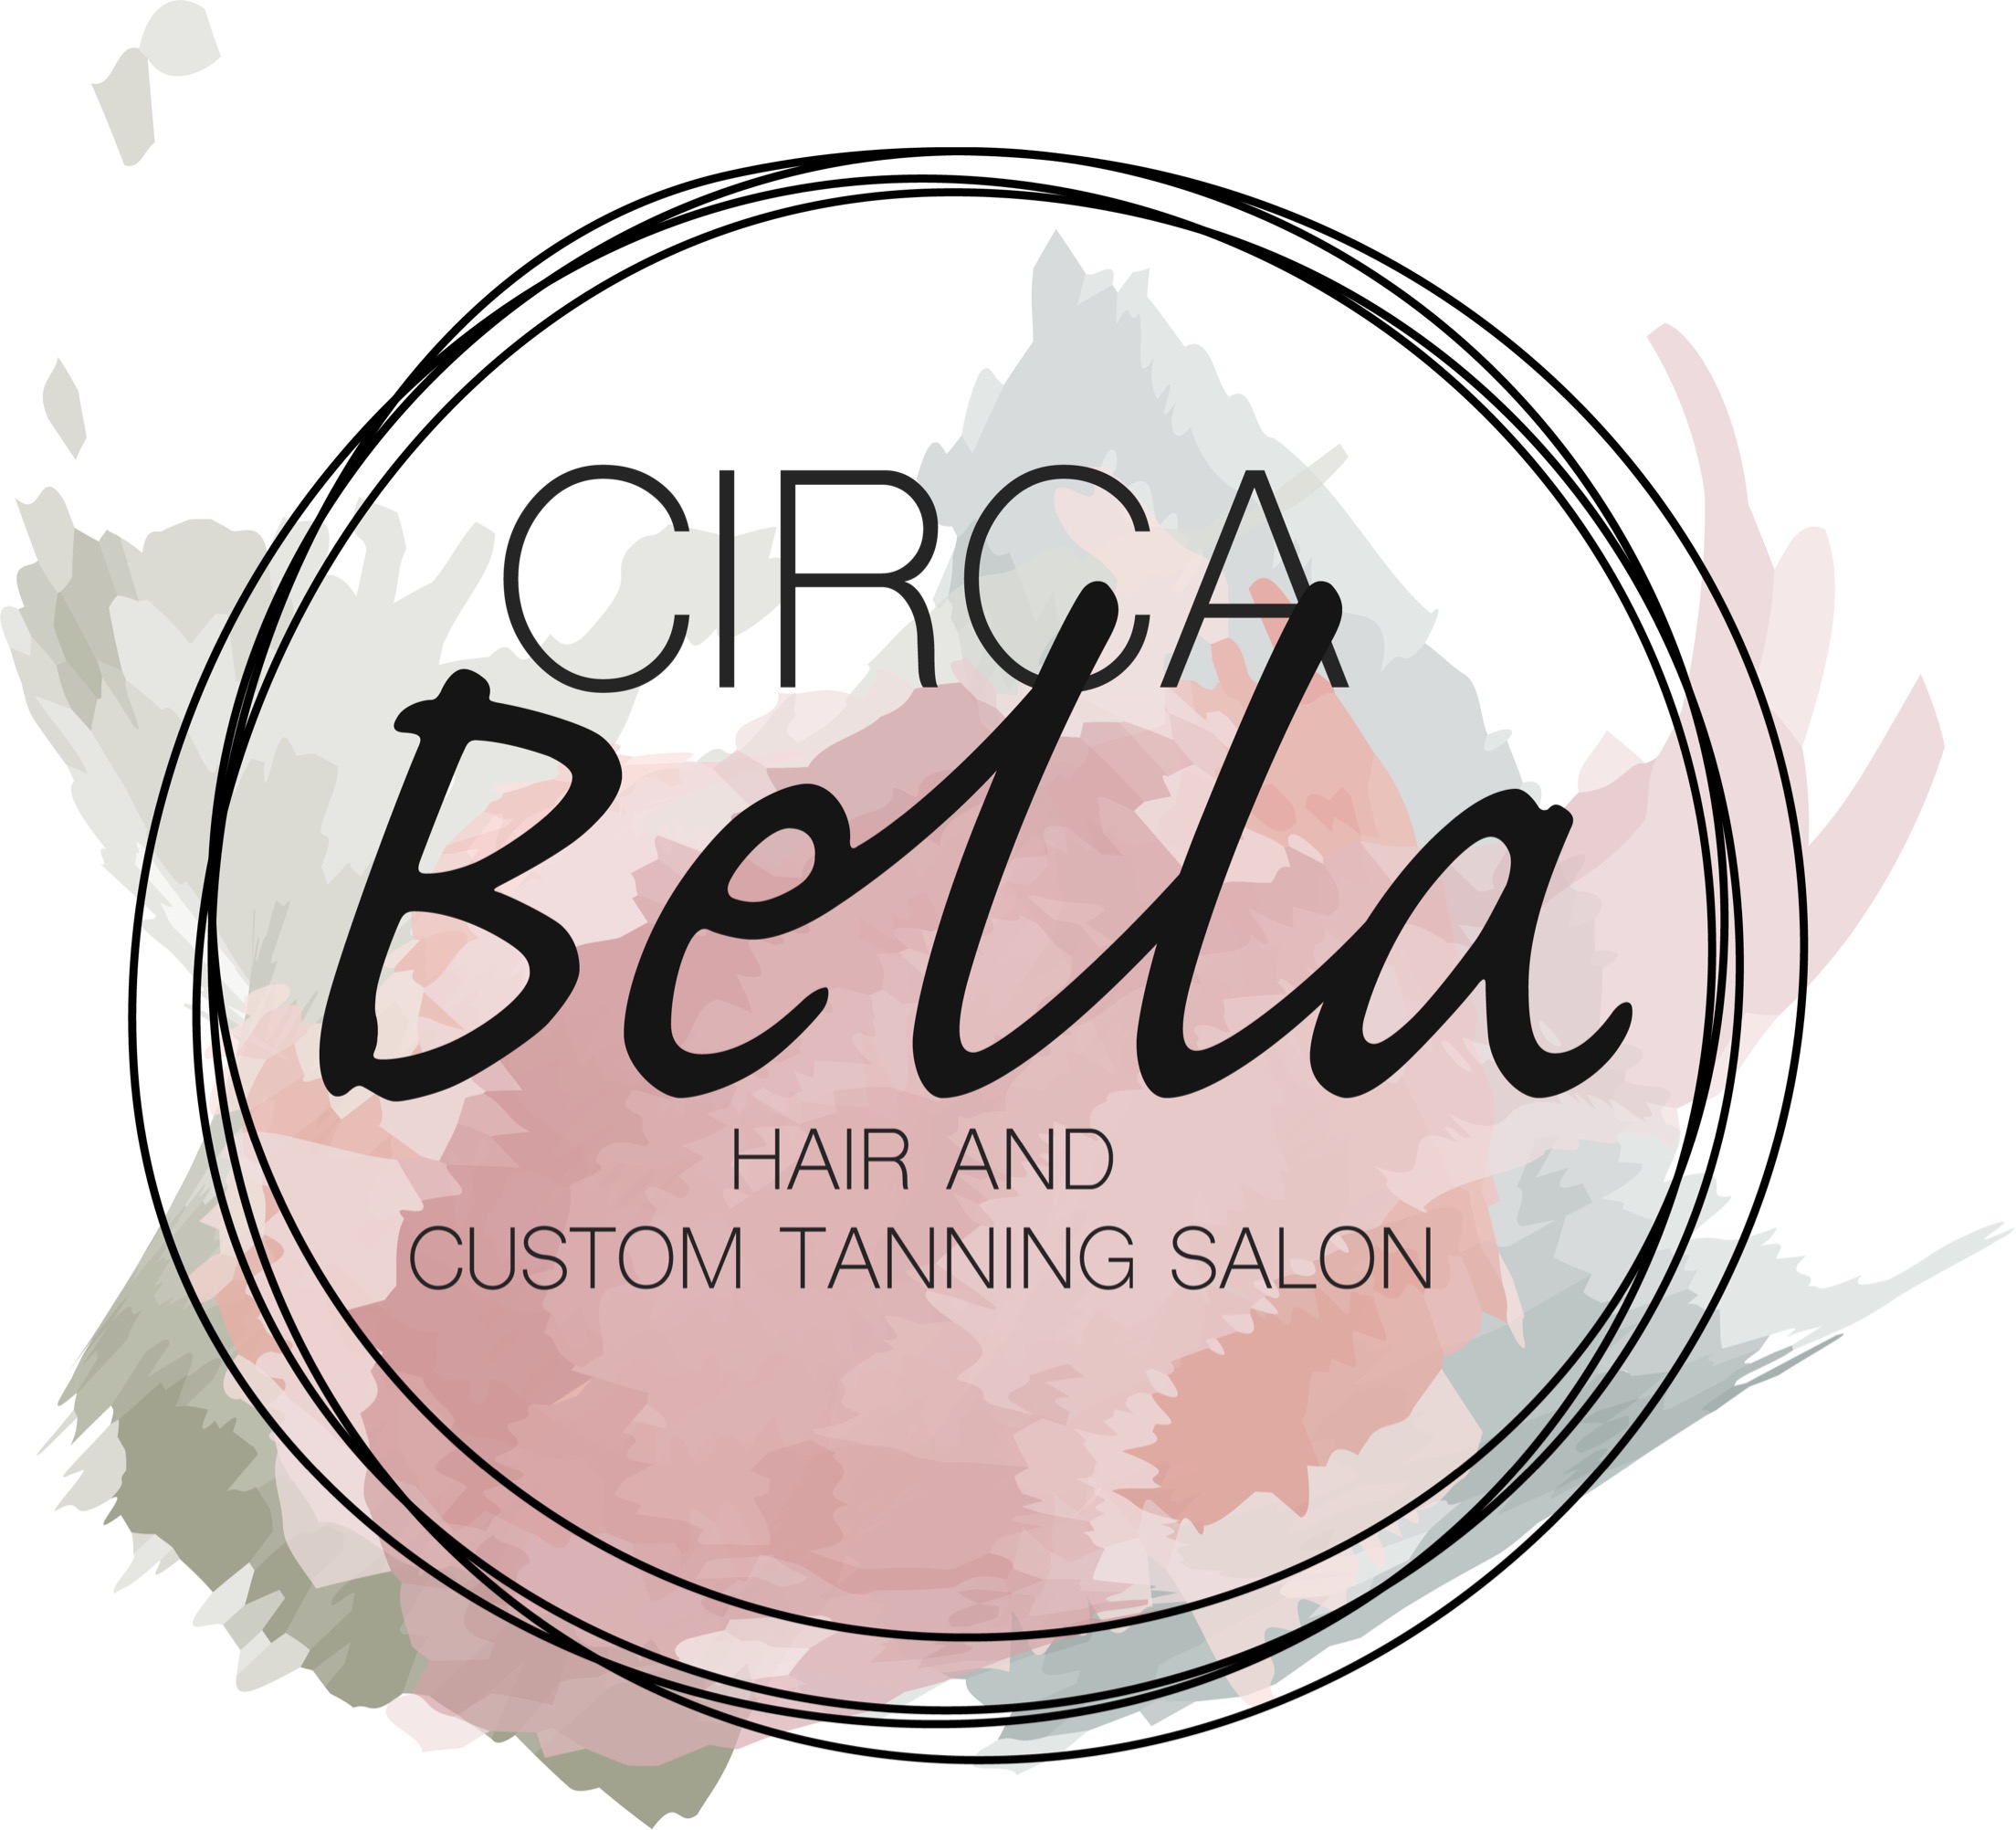 Circa Bella LLC